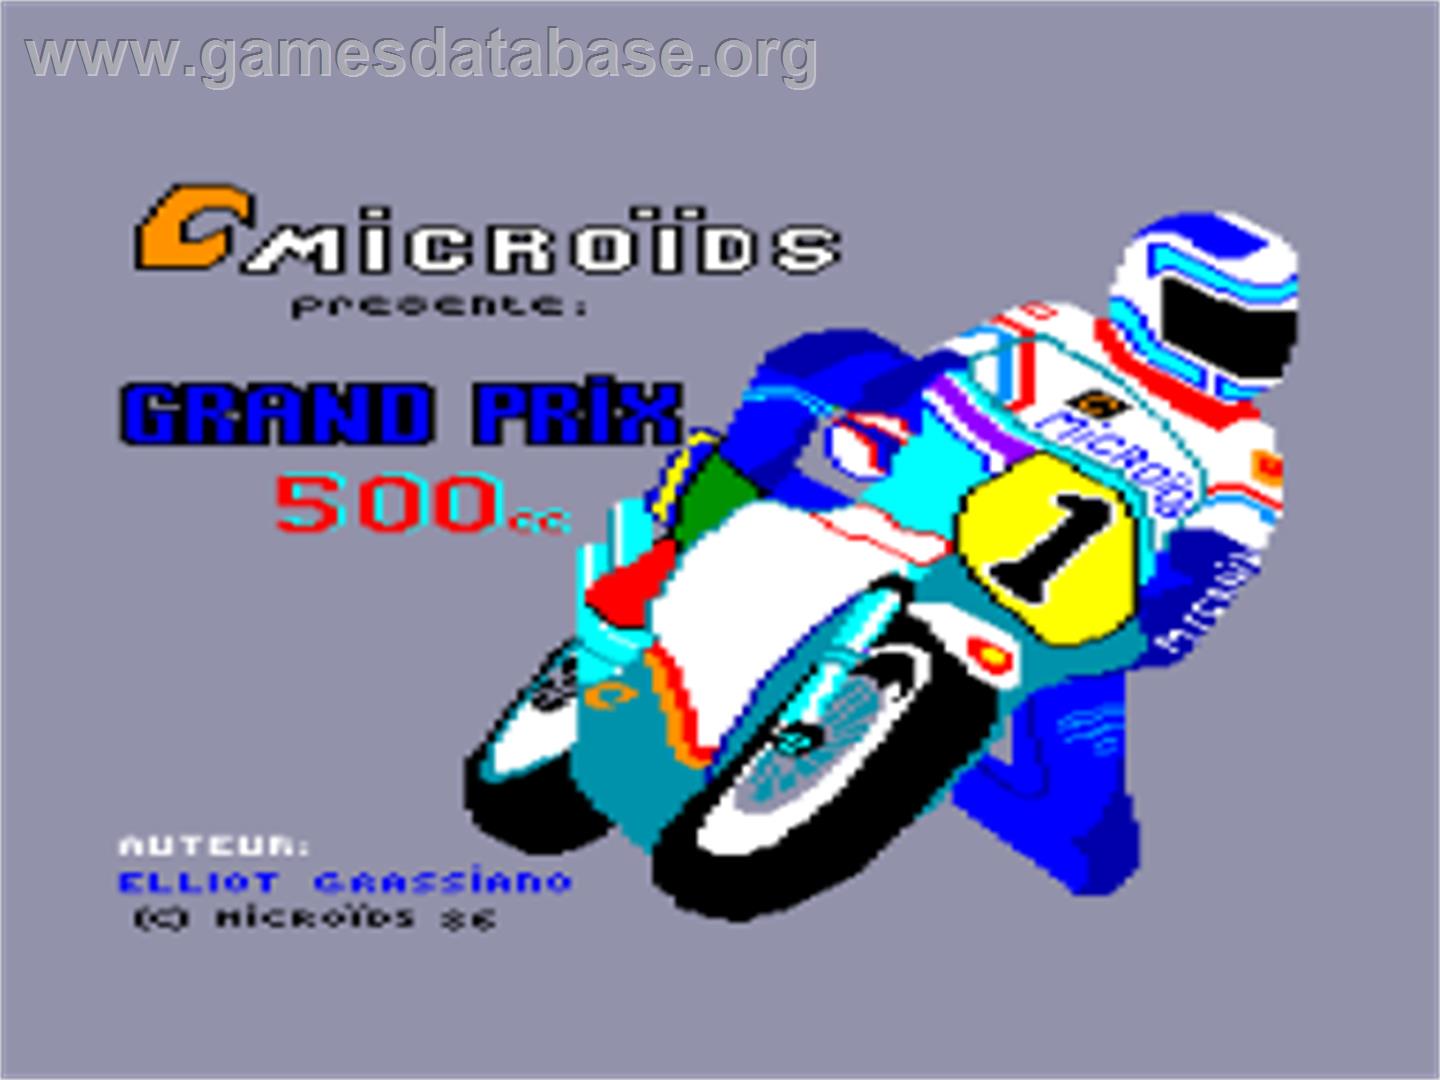 Grand Prix 500 cc - Amstrad CPC - Artwork - Title Screen